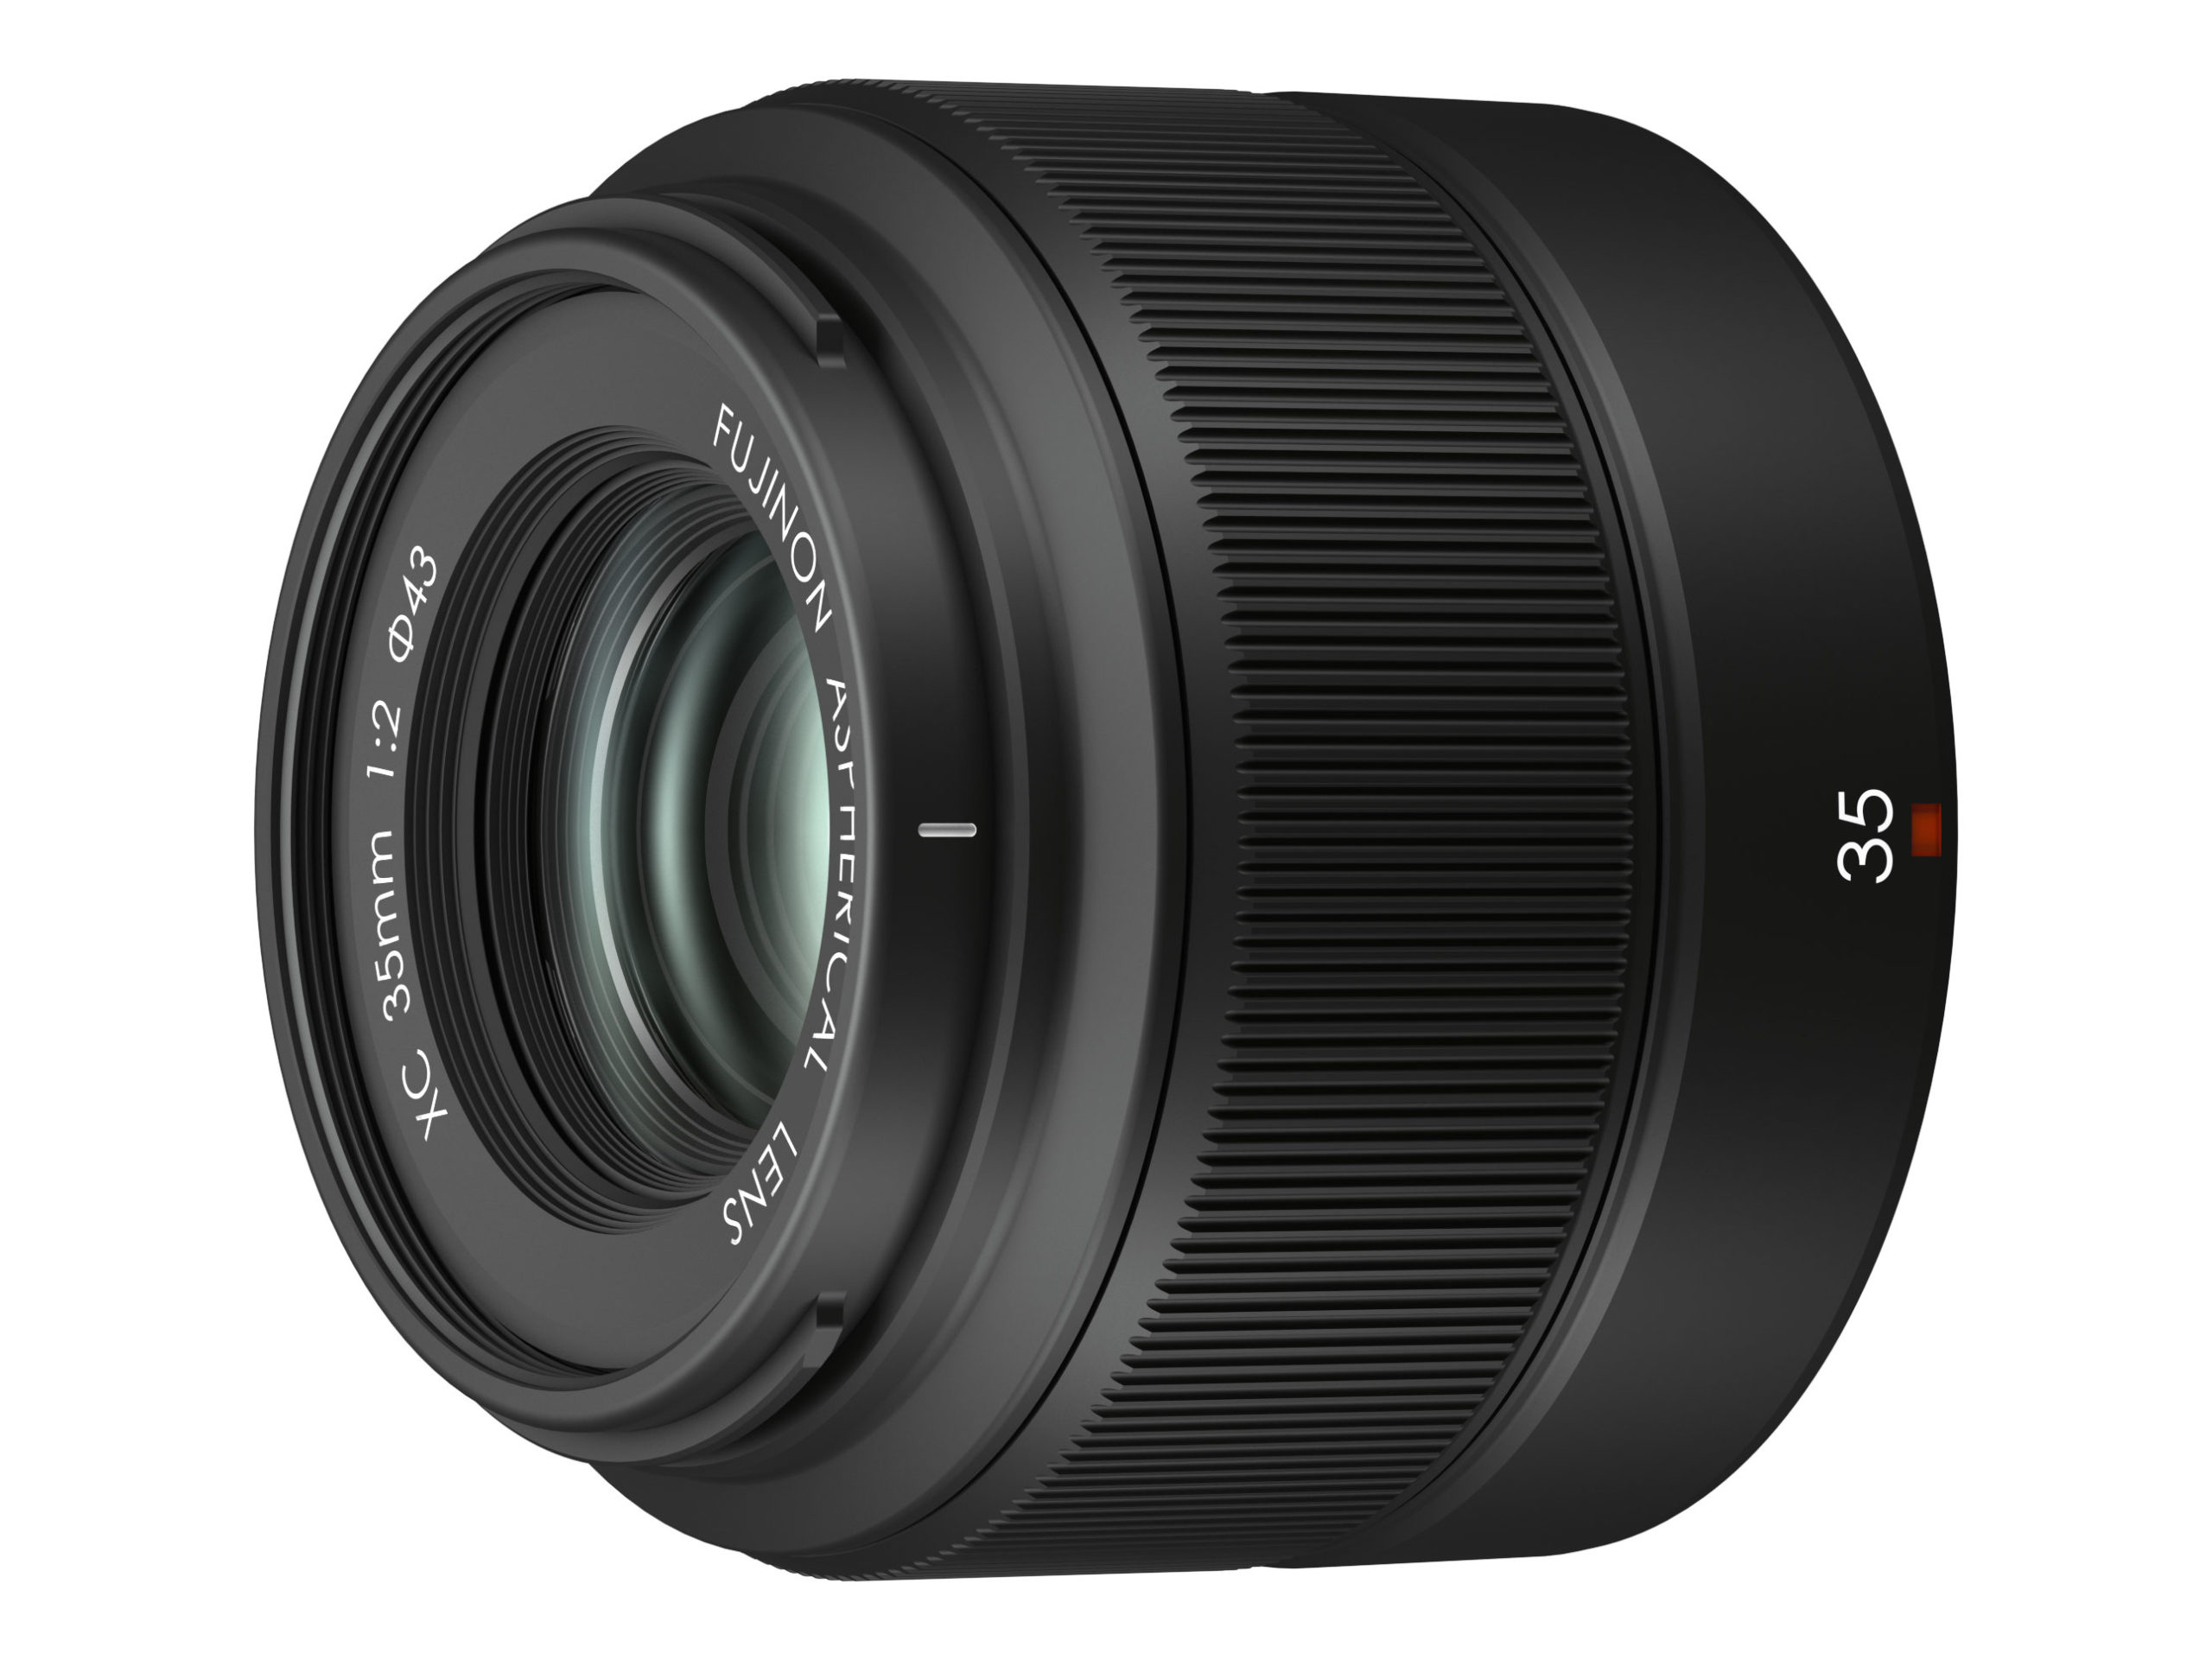 Fujifilm Uygun Fiyatlı XC 35mm F2 Lens!